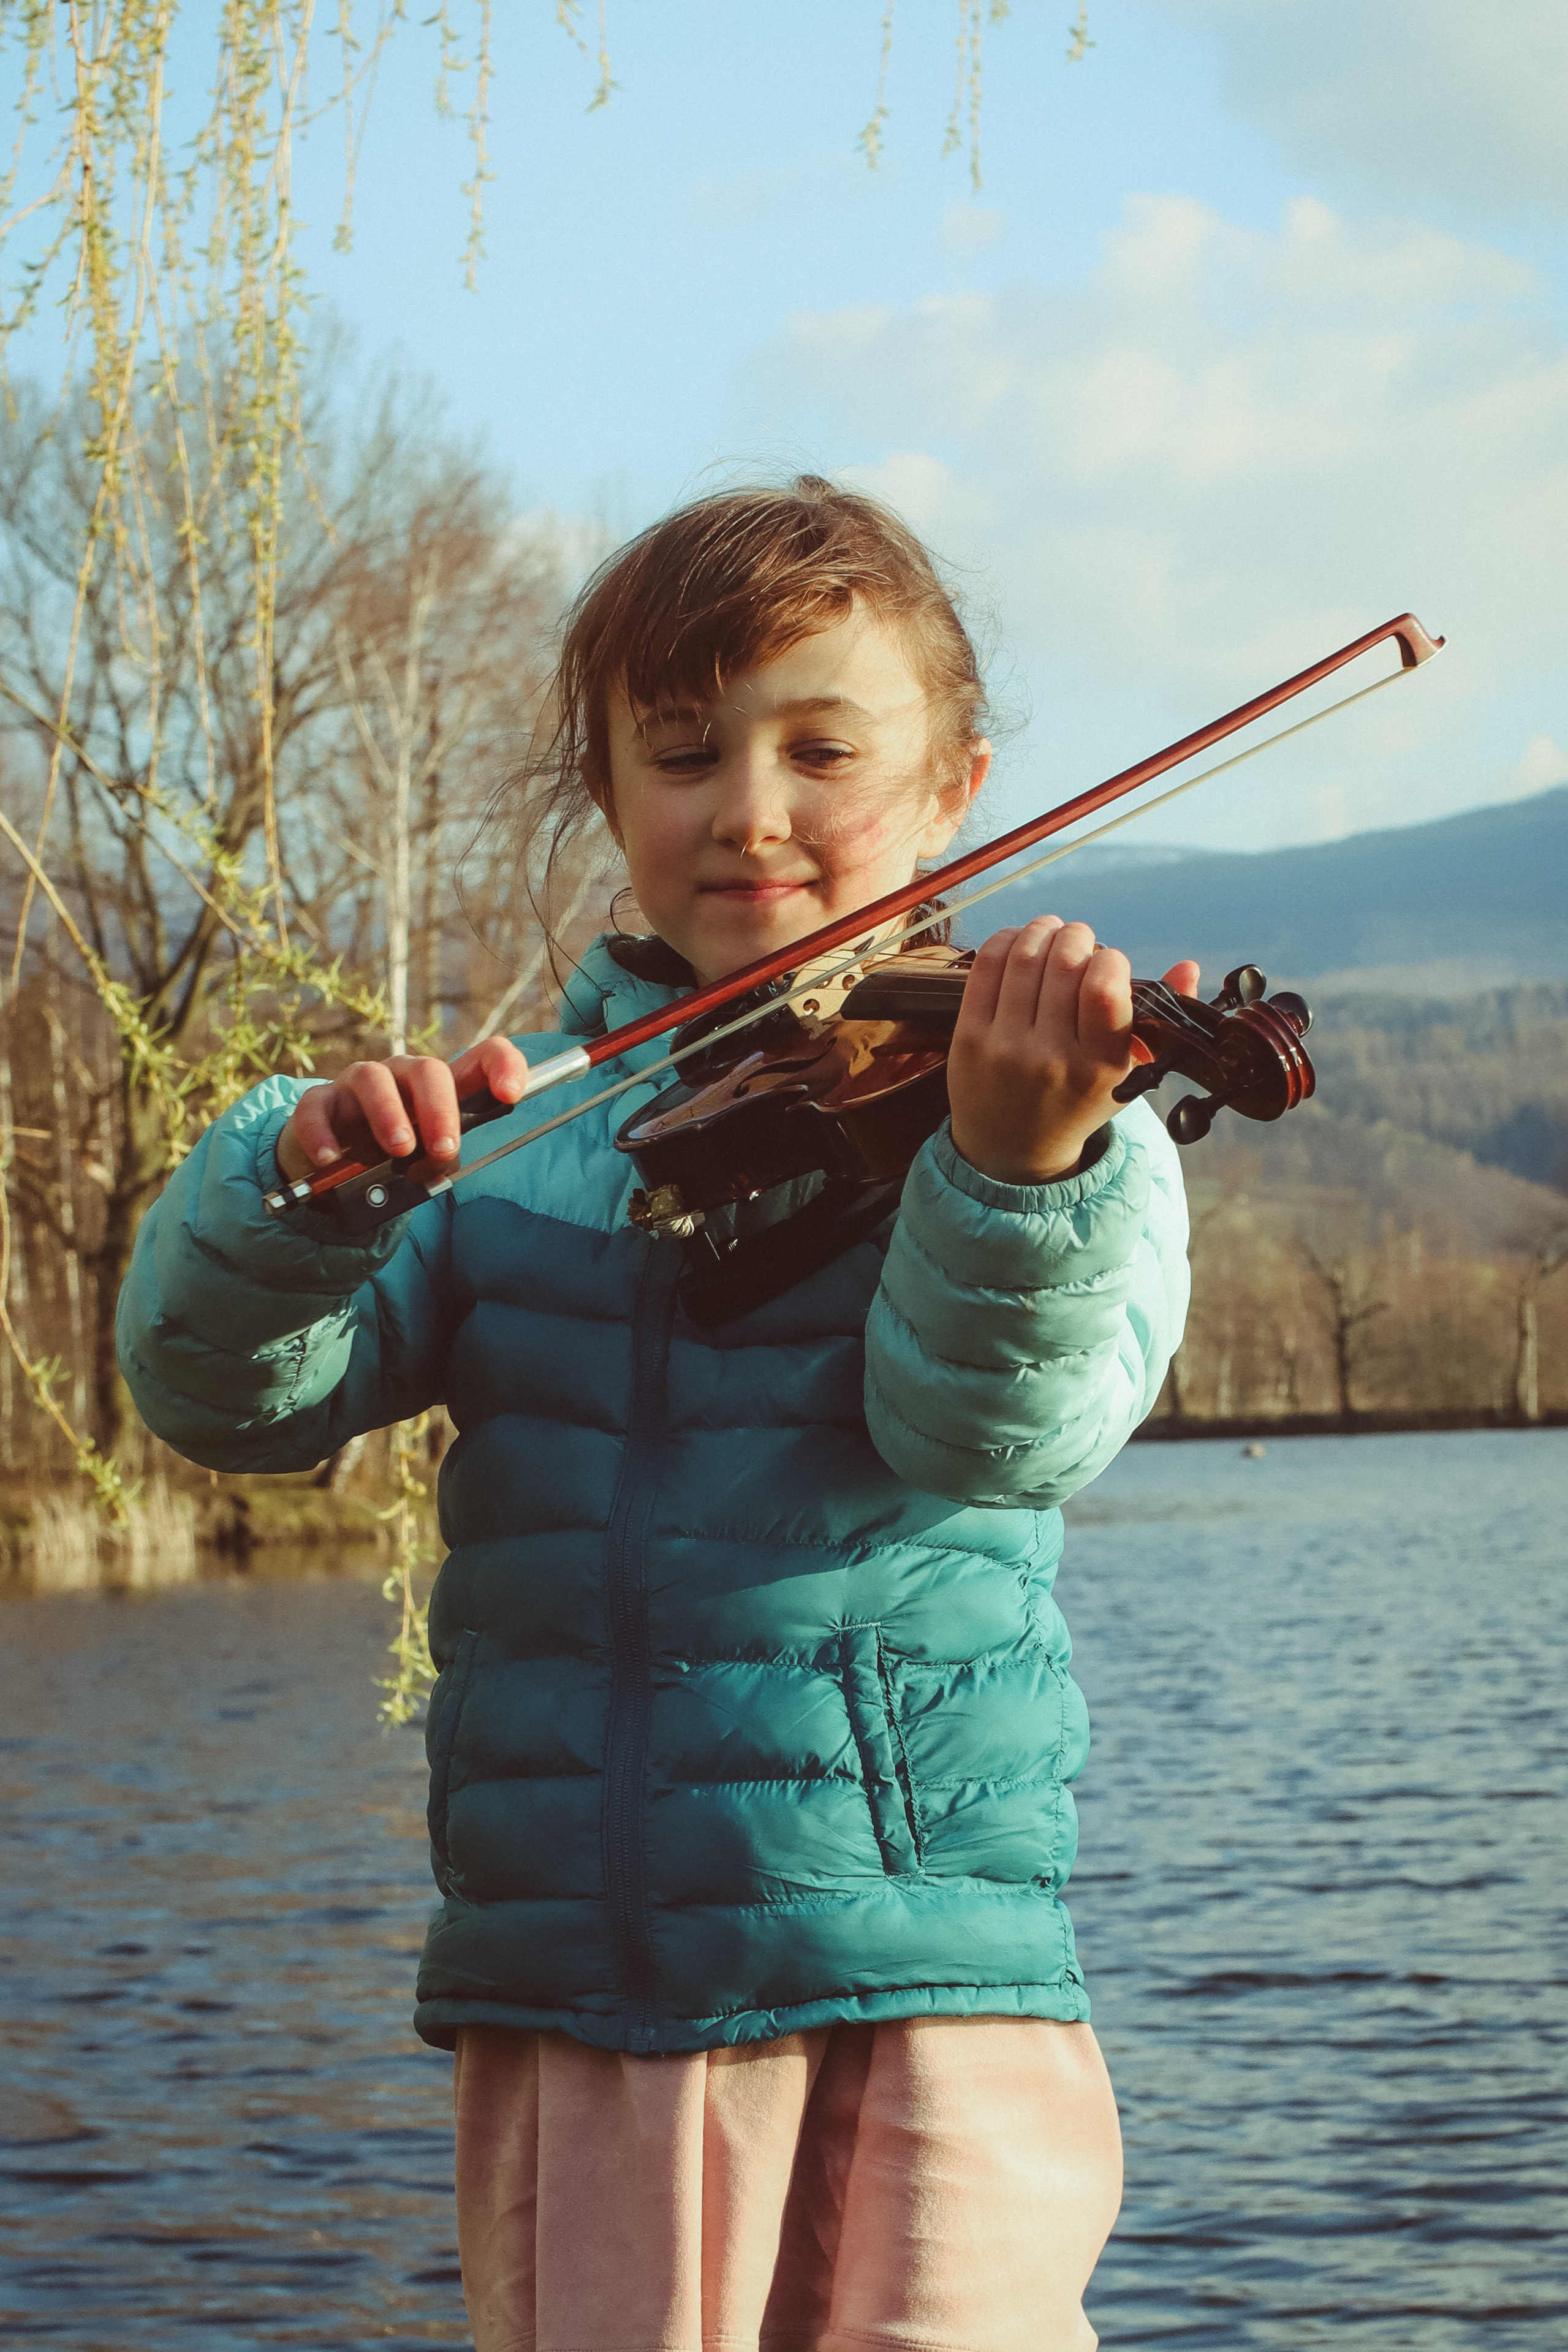 Zdjęcie postaci dziewczynki: Ronji Wójtowicz-Stambulskiej zrobione na potrzeby konkursu. W tle jezioro, dziewczynka trzyma altówkę, w pozycji sugerującej granie na instrumencie